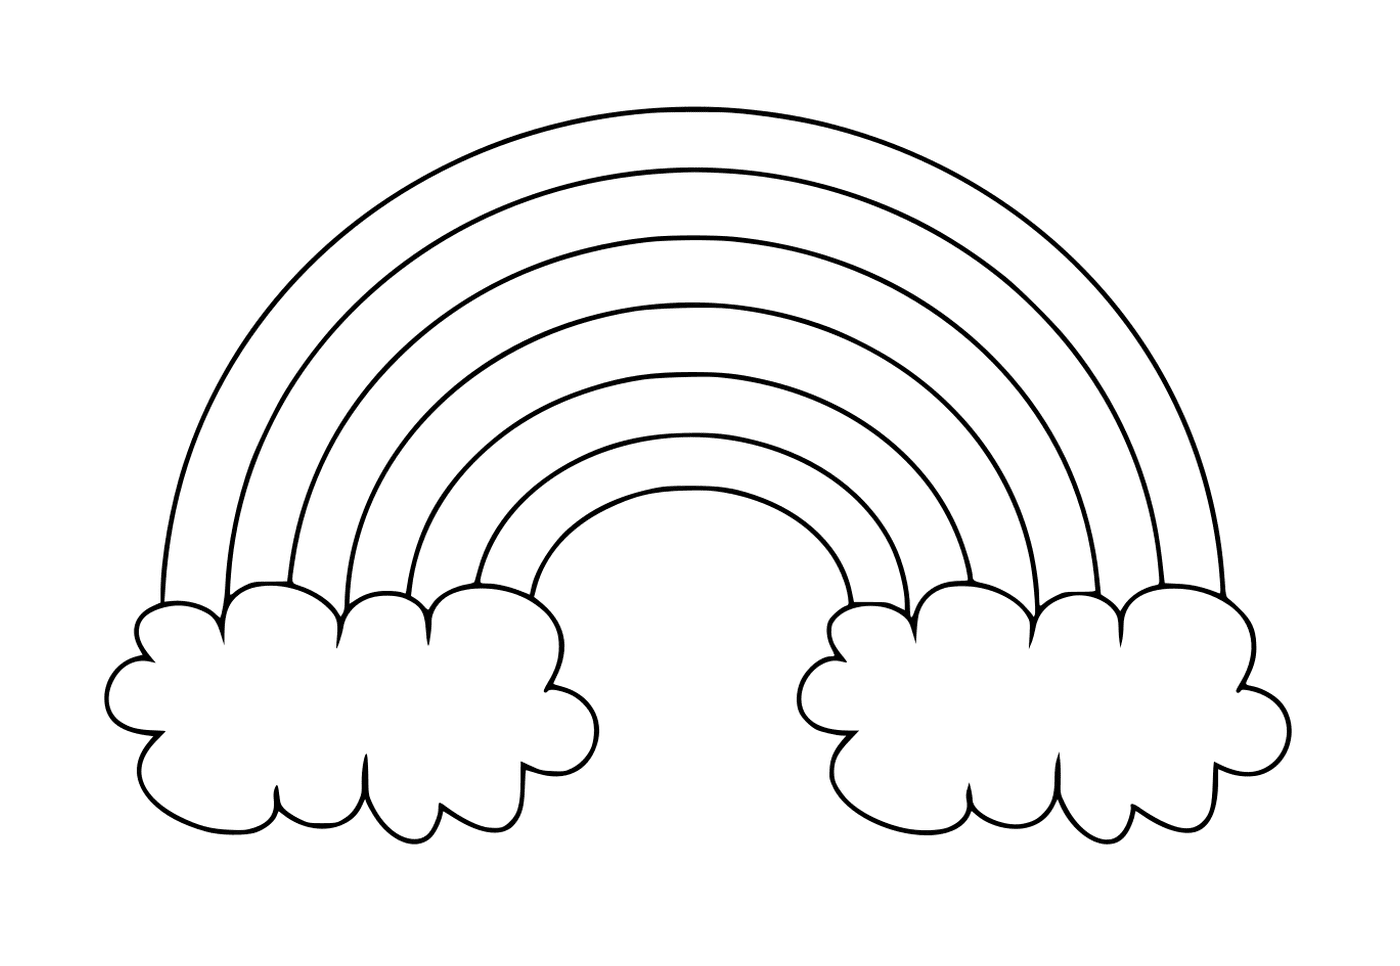  Um arco-íris simples com duas nuvens 